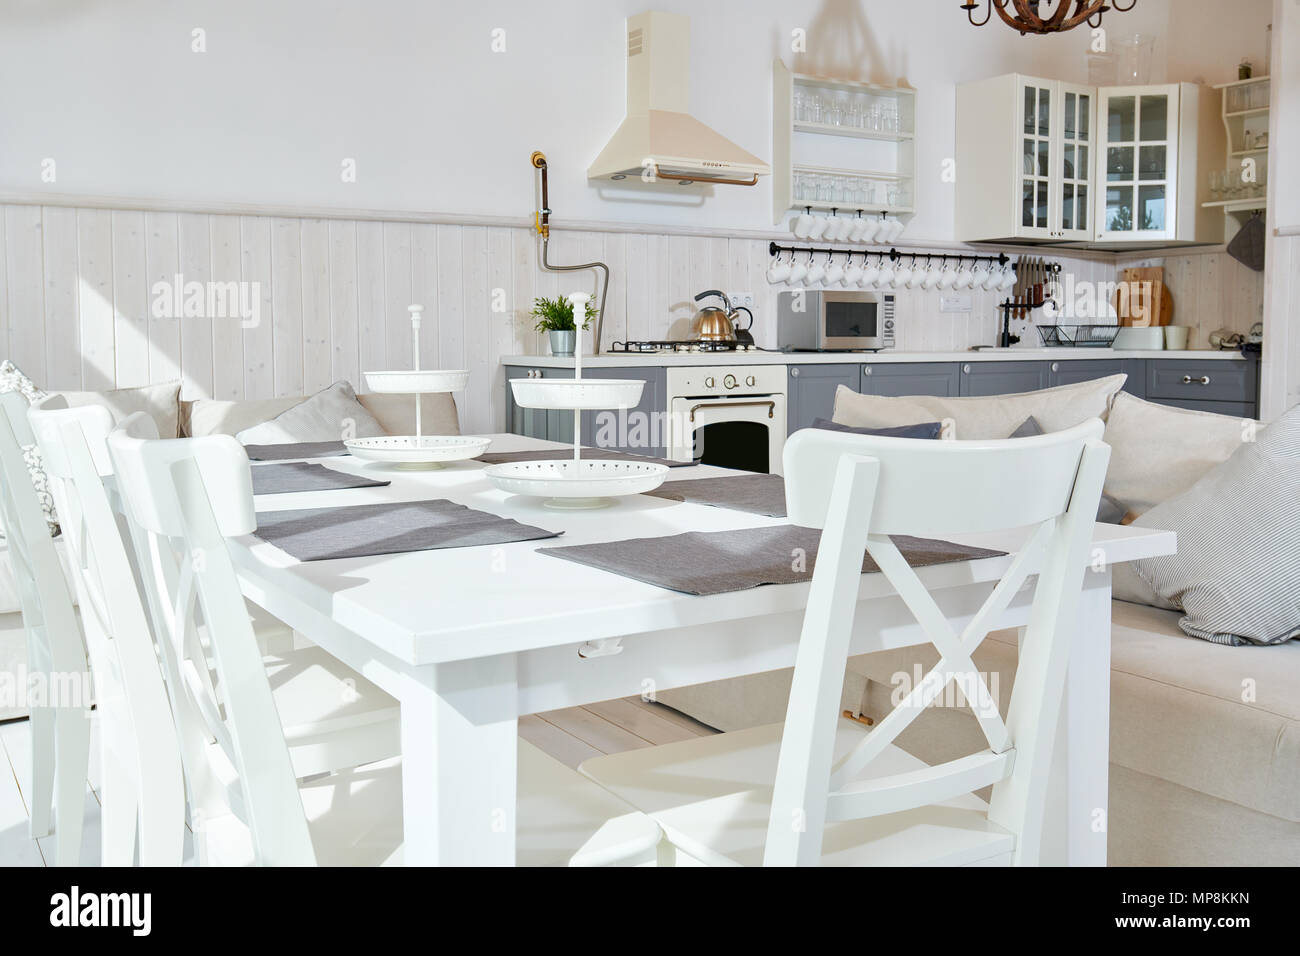 Lichtdurchflutete offene Küche Interieur mit weißen Möbeln und grau Küche Zähler in minimalistischen skandinavischen Stil, Kopieren, niemand Stockfoto